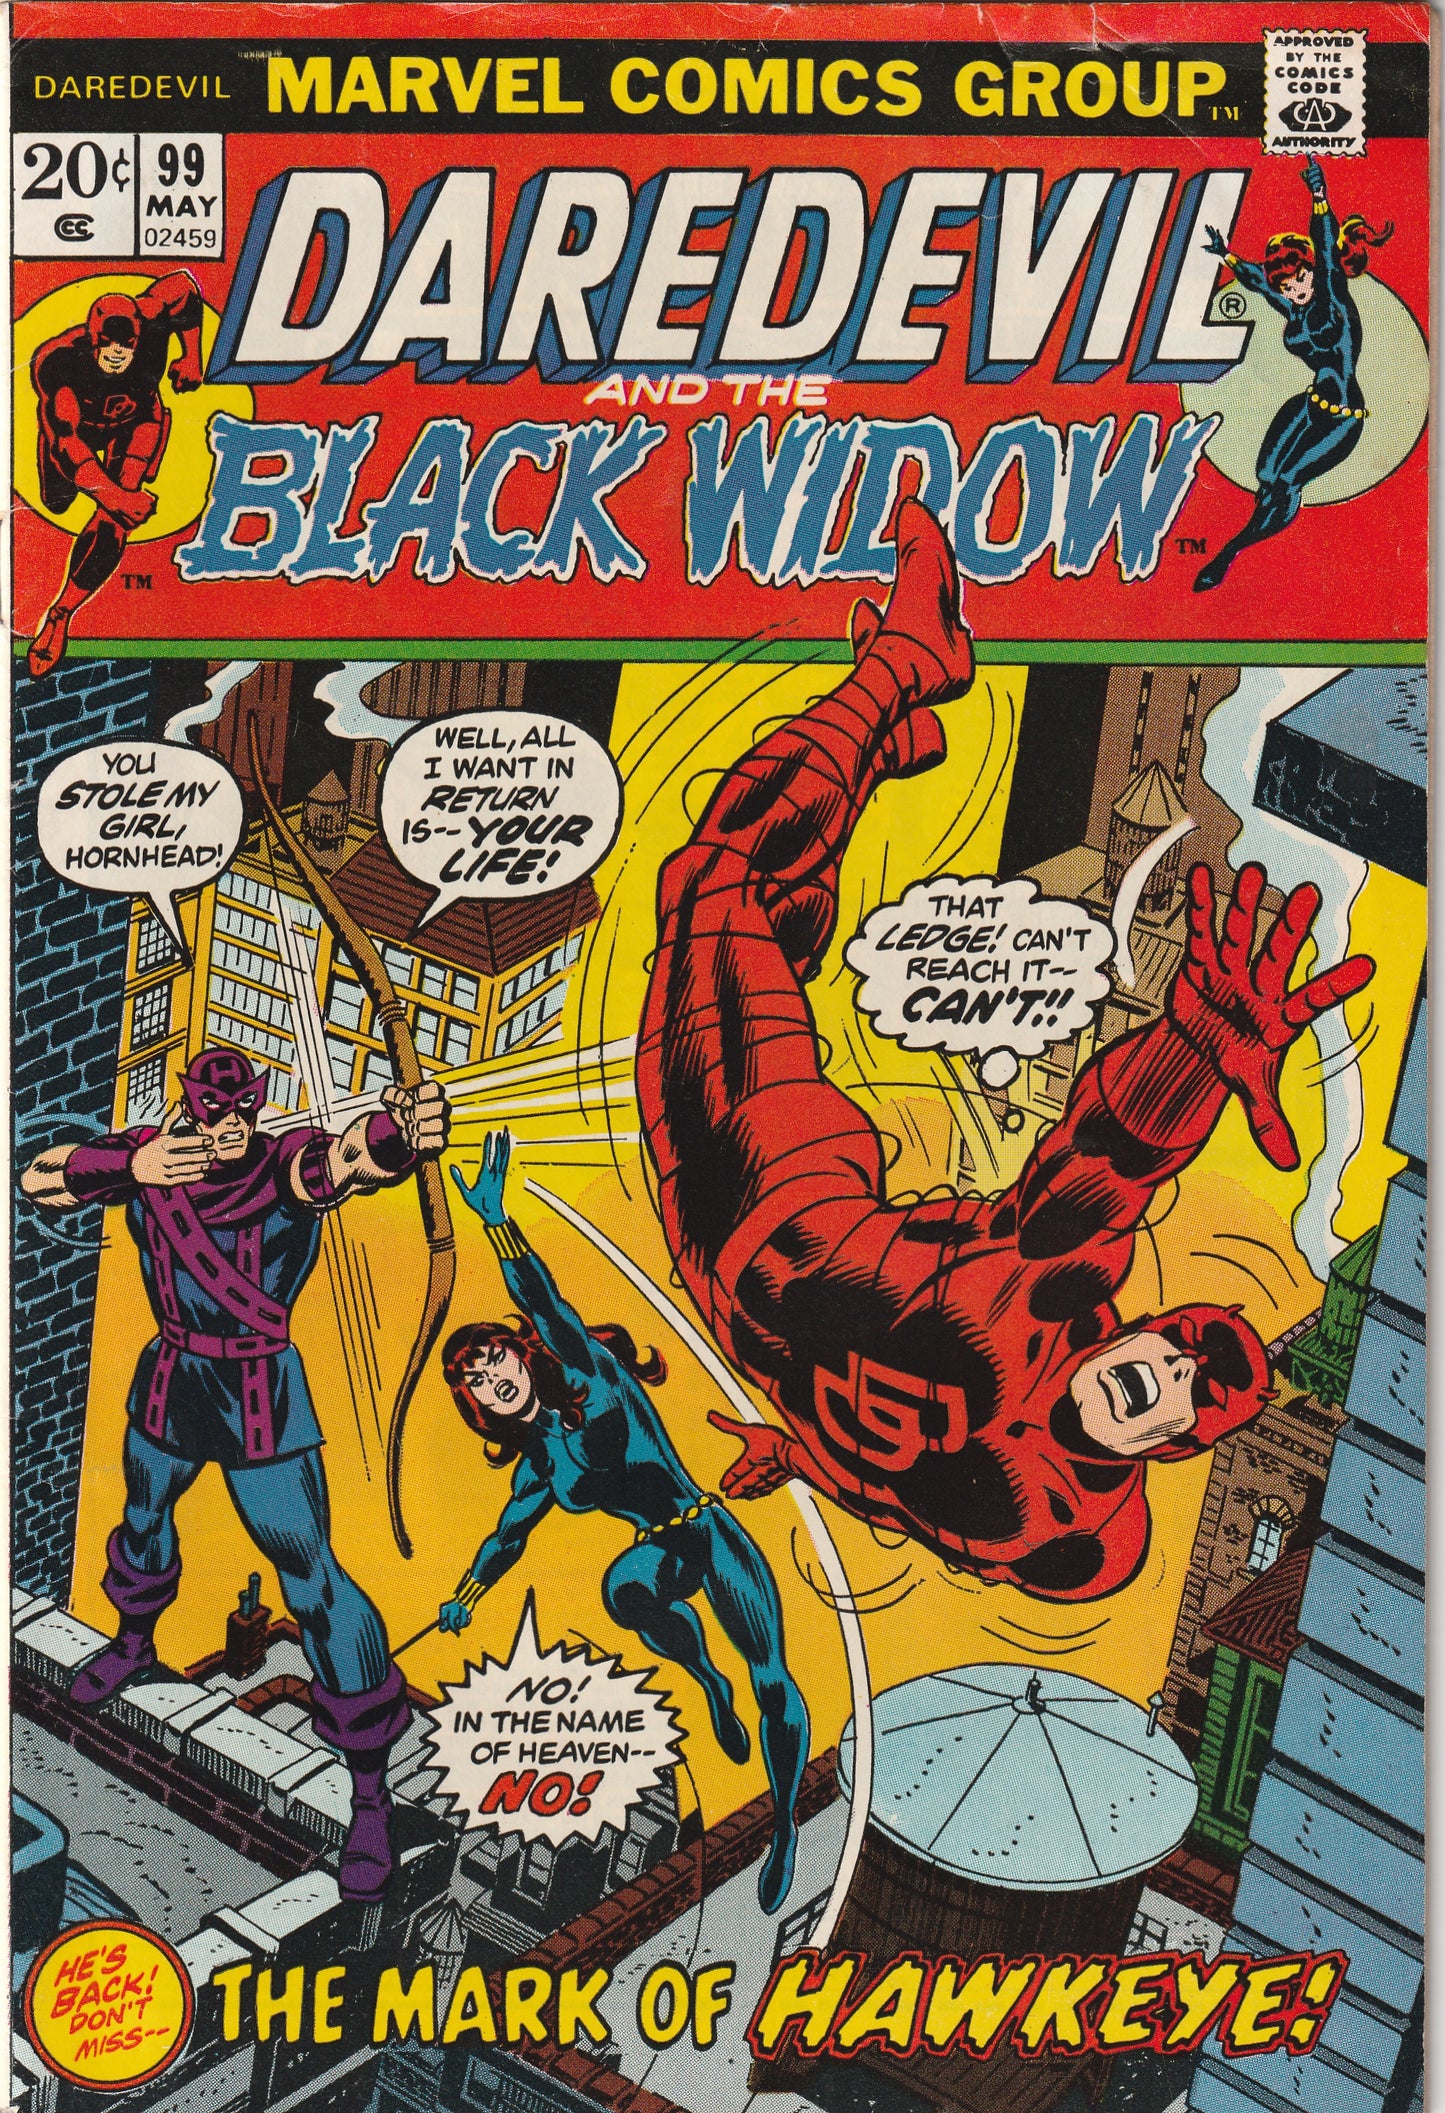 Daredevil #99 (1973) - Hawkeye Appearance, Daredevil destroys Hawkeye's Bow